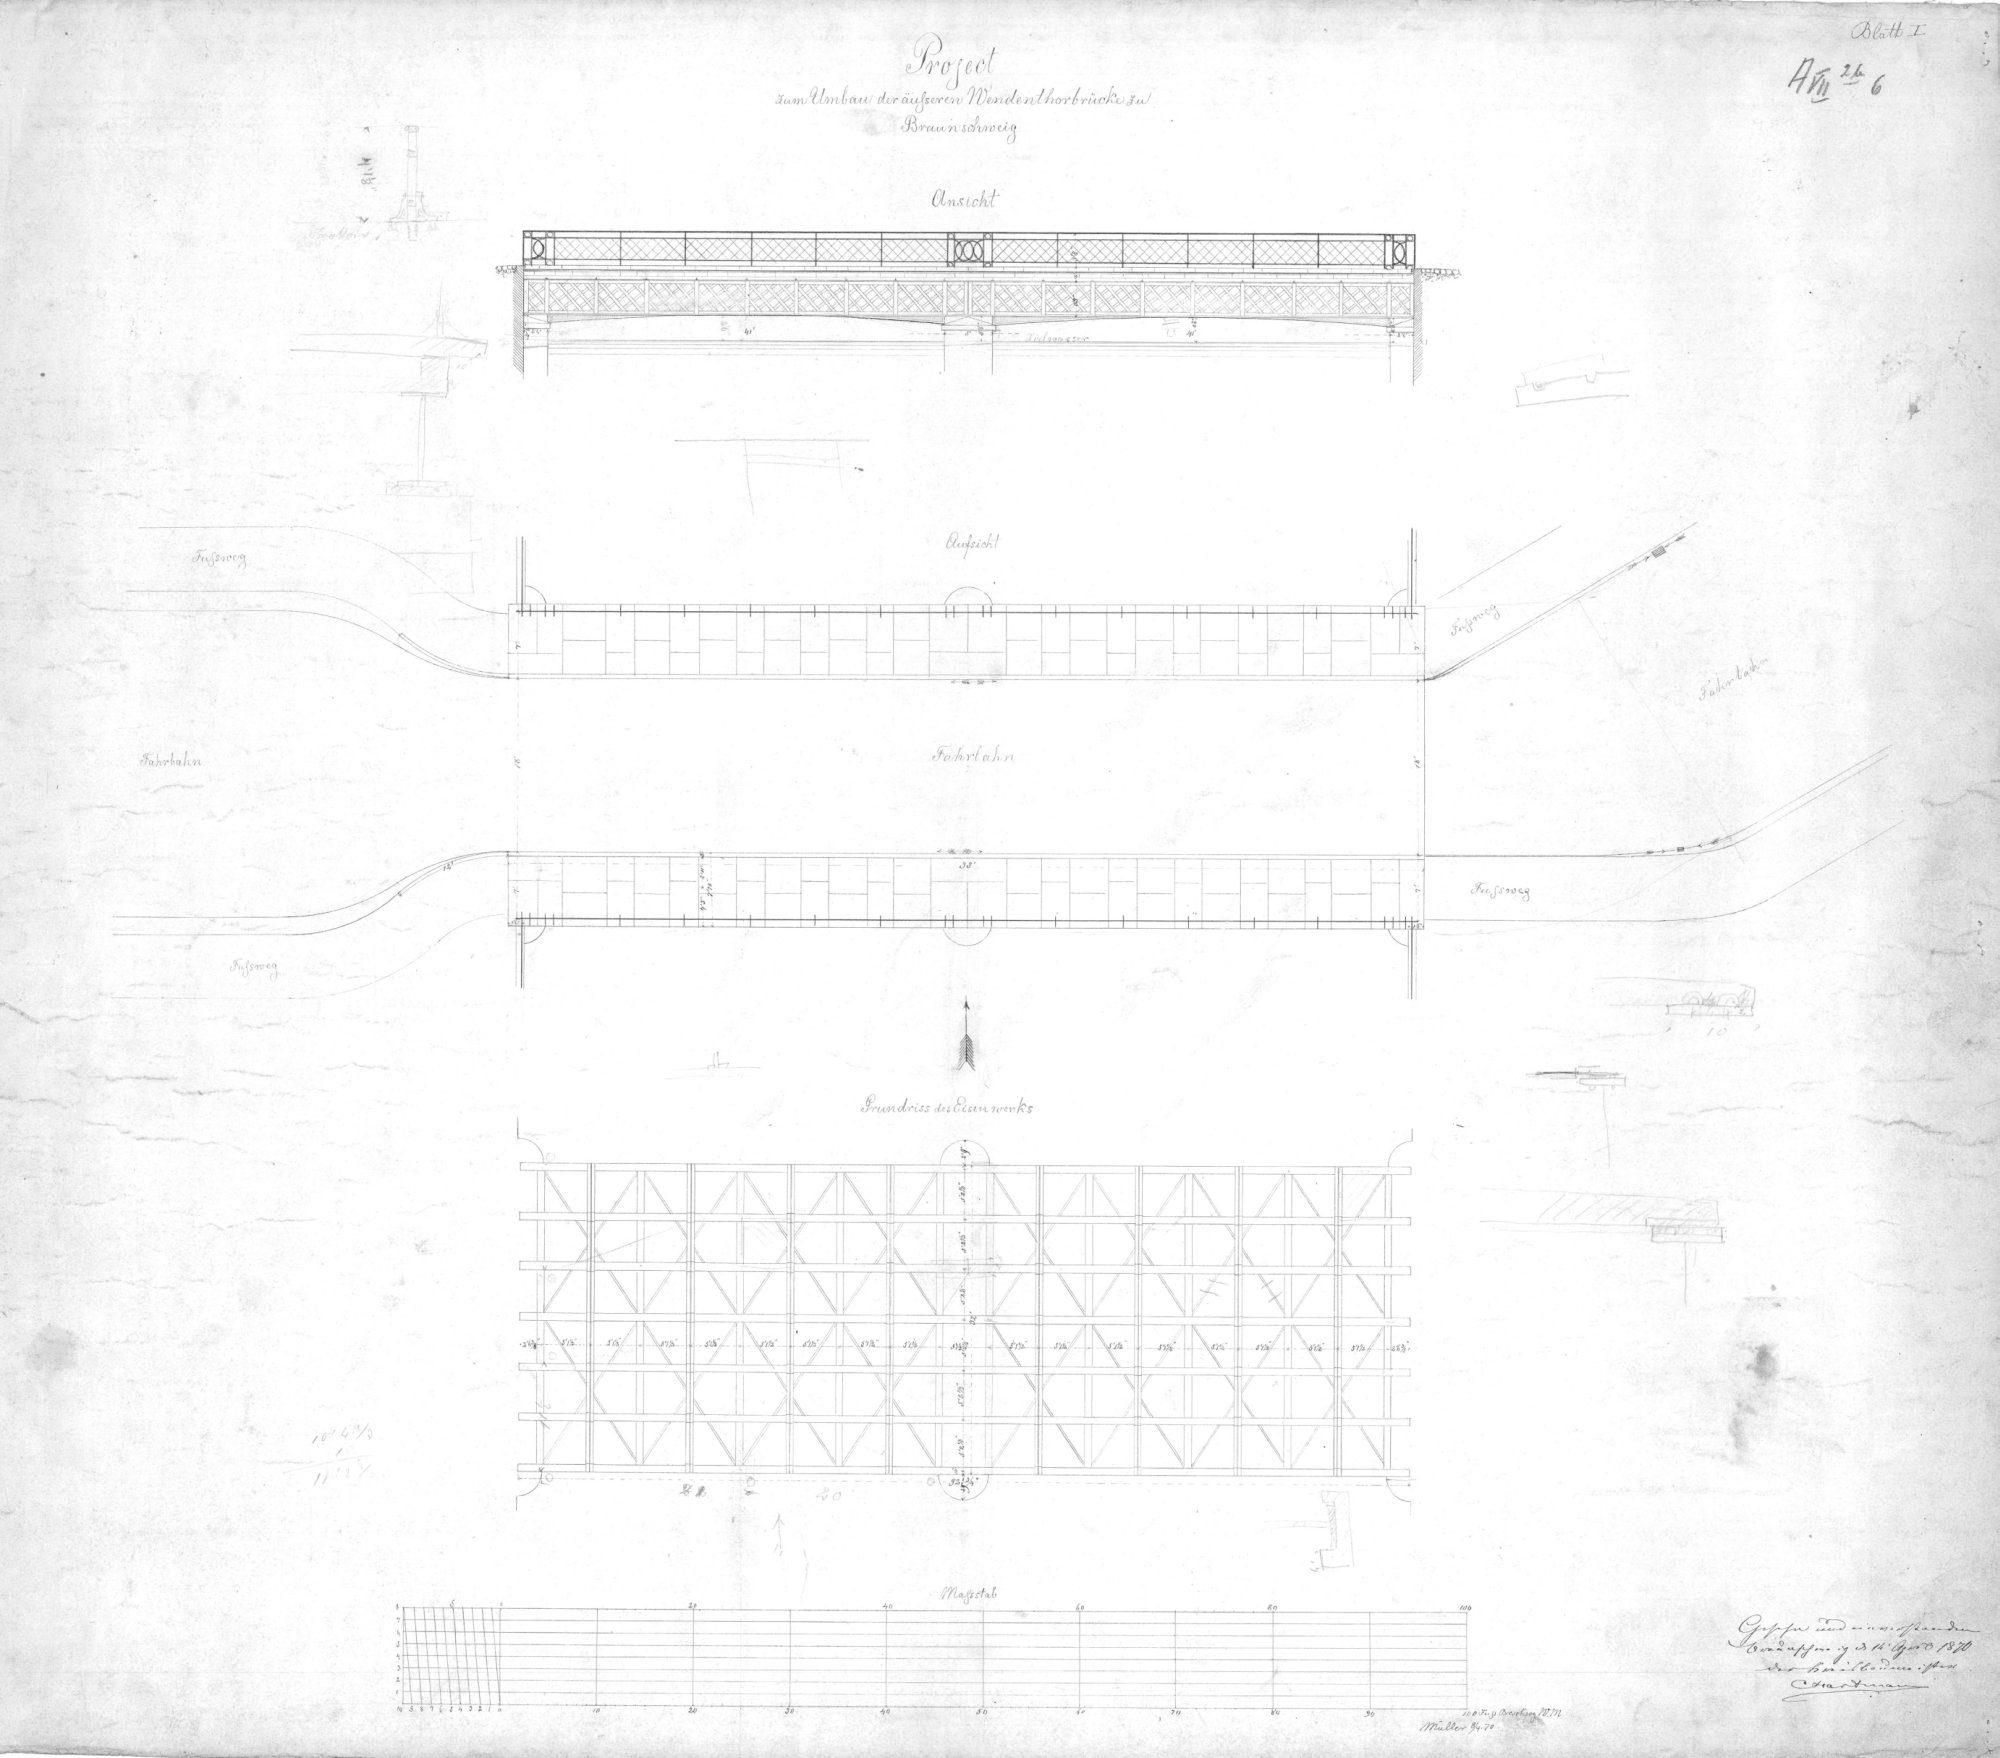 Wendentorbrücke, Entwurfsplan, 1870 (Wird bei Klick vergrößert)